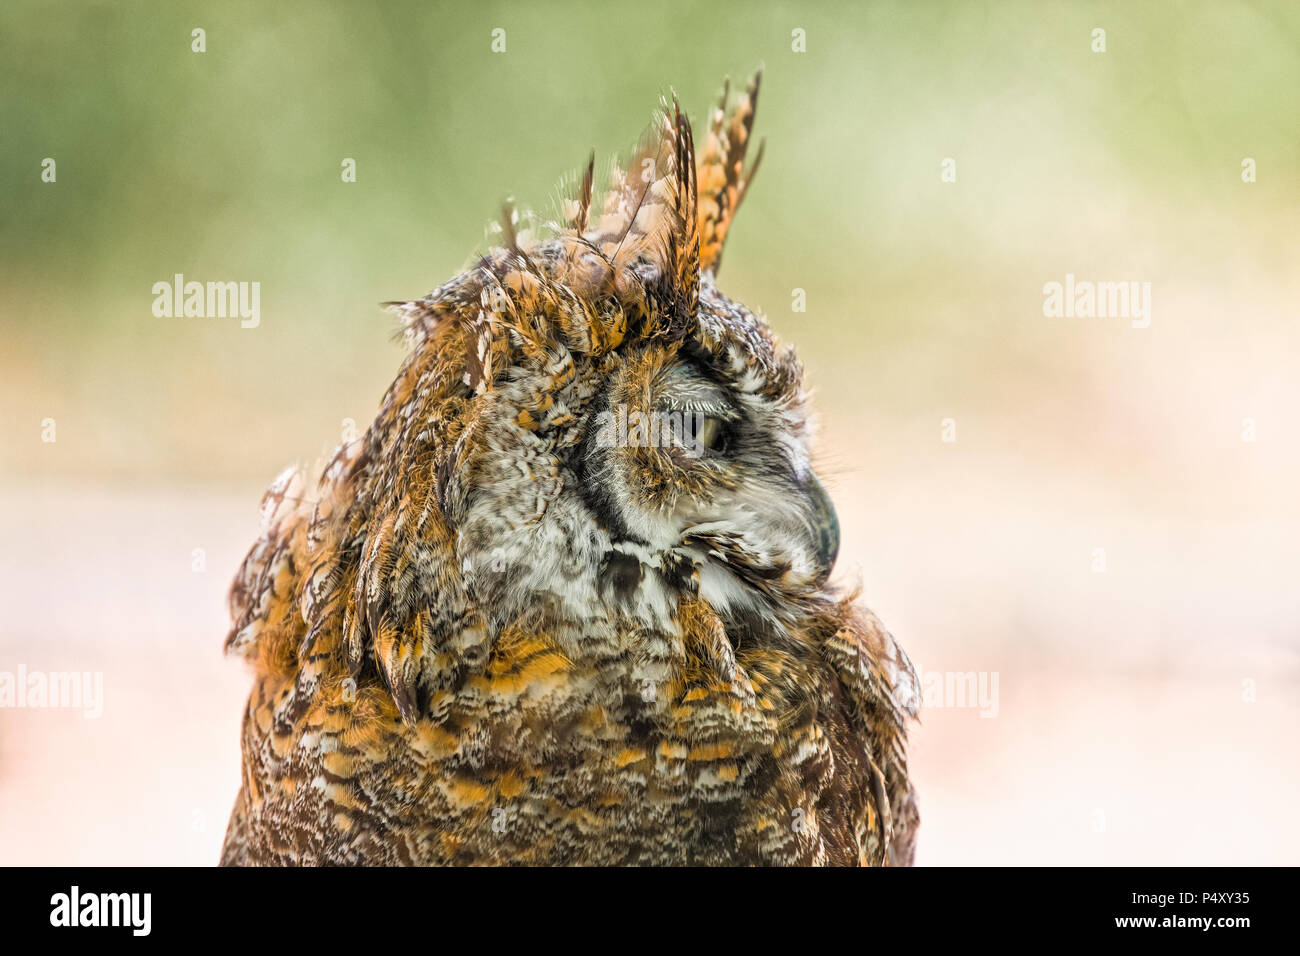 Eine coy Blick von der Great Horned Owl (Bubo virginianus), offenbart das Wappen des Tiger - orange und schwarz Gefieder auf den Kopf. Stockfoto